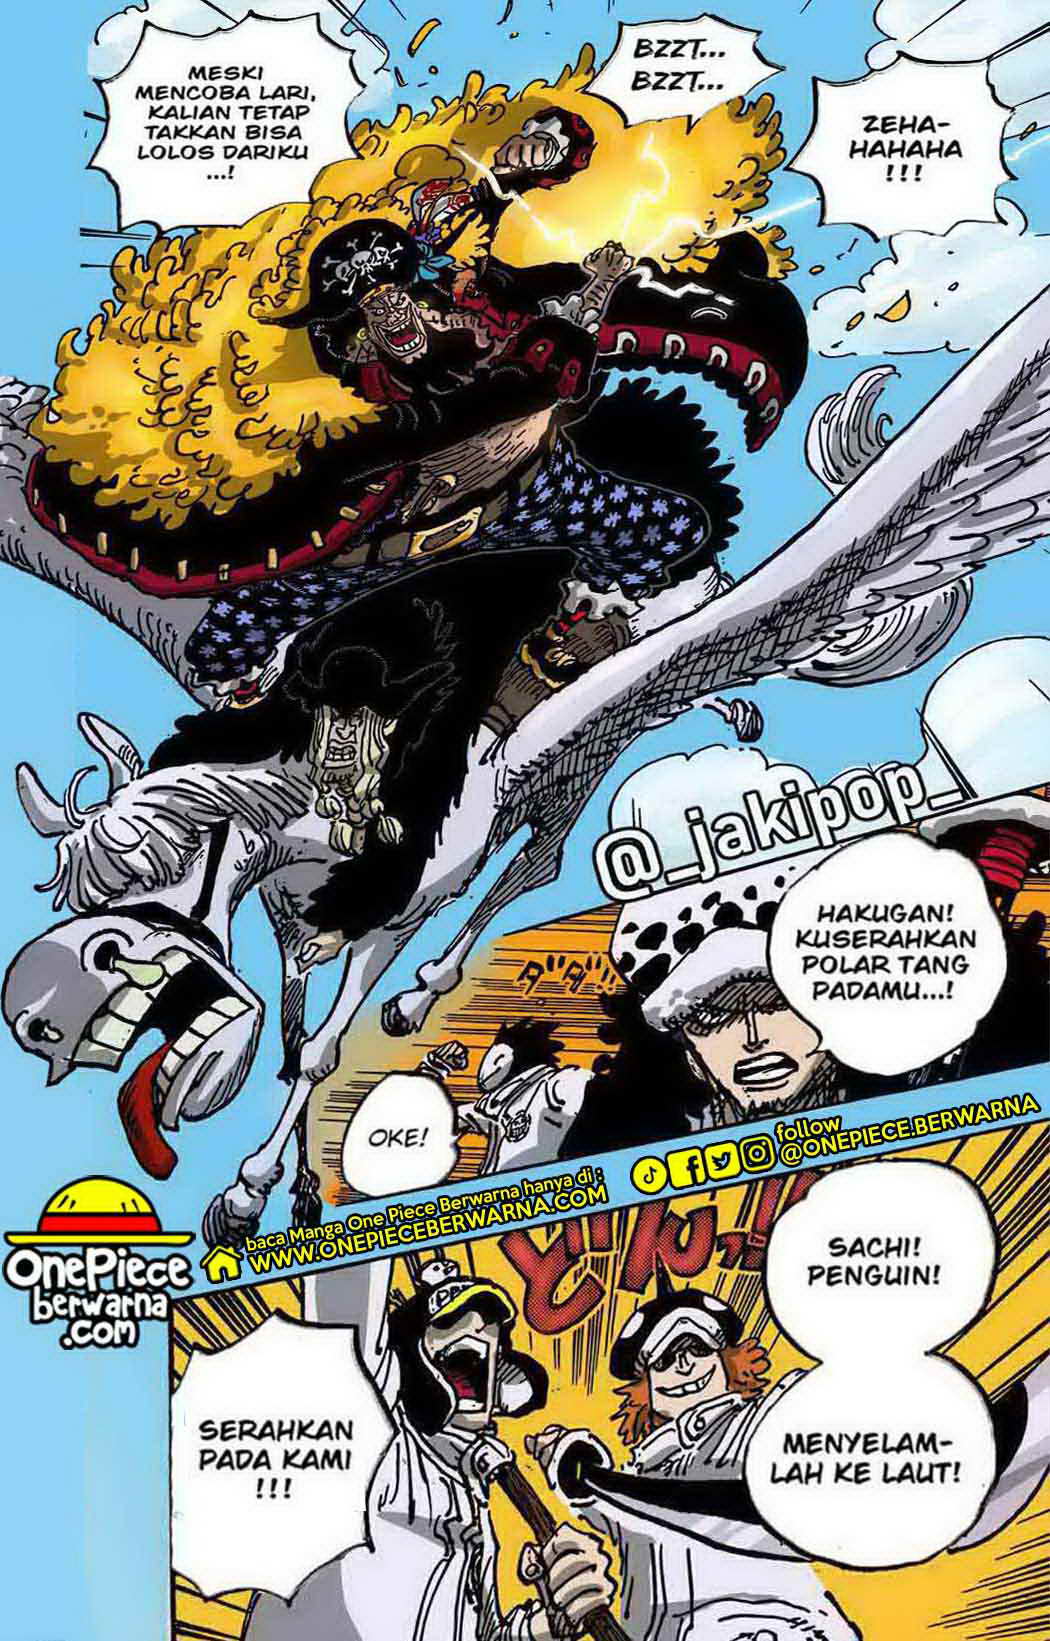 Baca manga komik One Piece Berwarna Bahasa Indonesia HD Chapter 1064